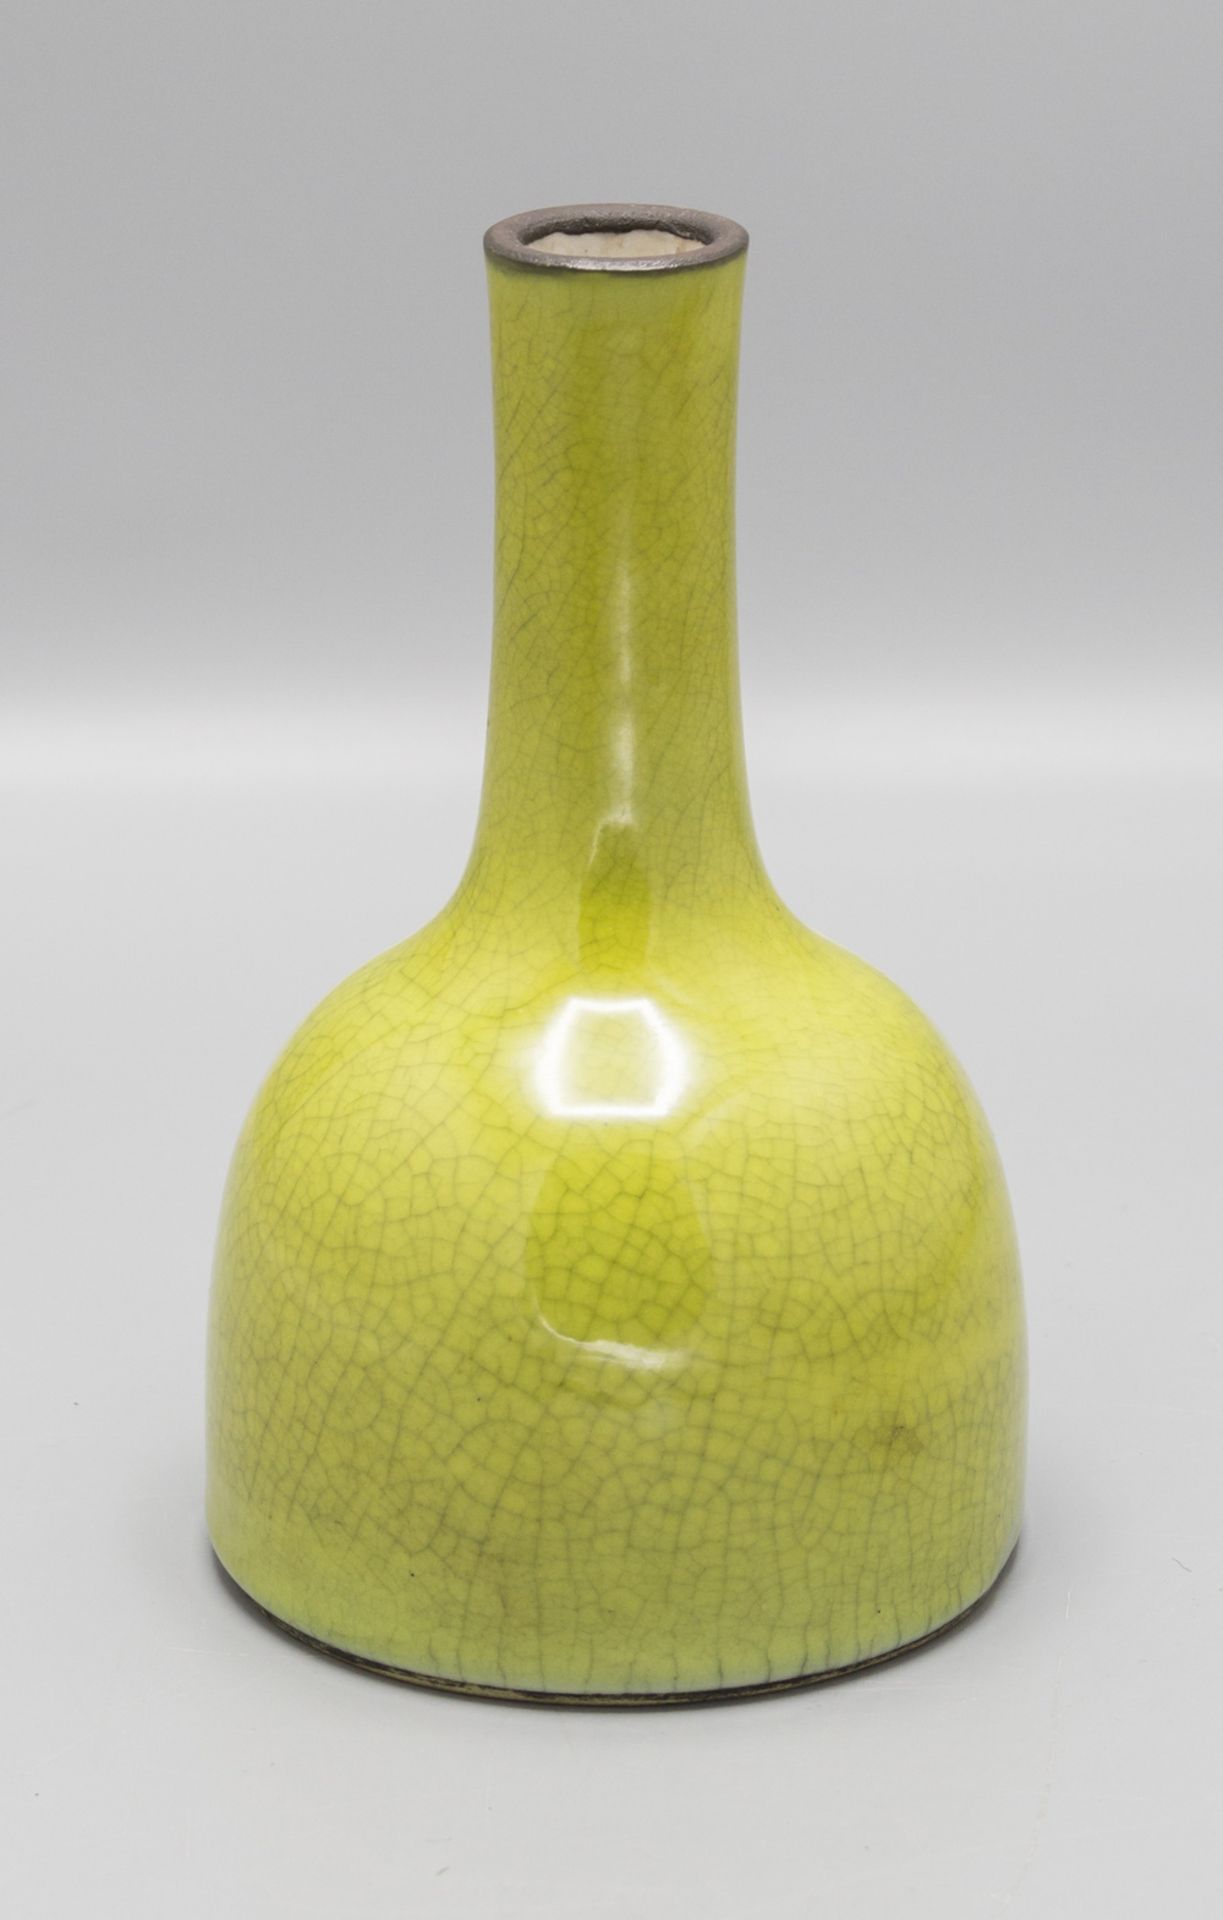 Apfelgrüne Vase / An apple green glazed vase, China, 19. Jh.